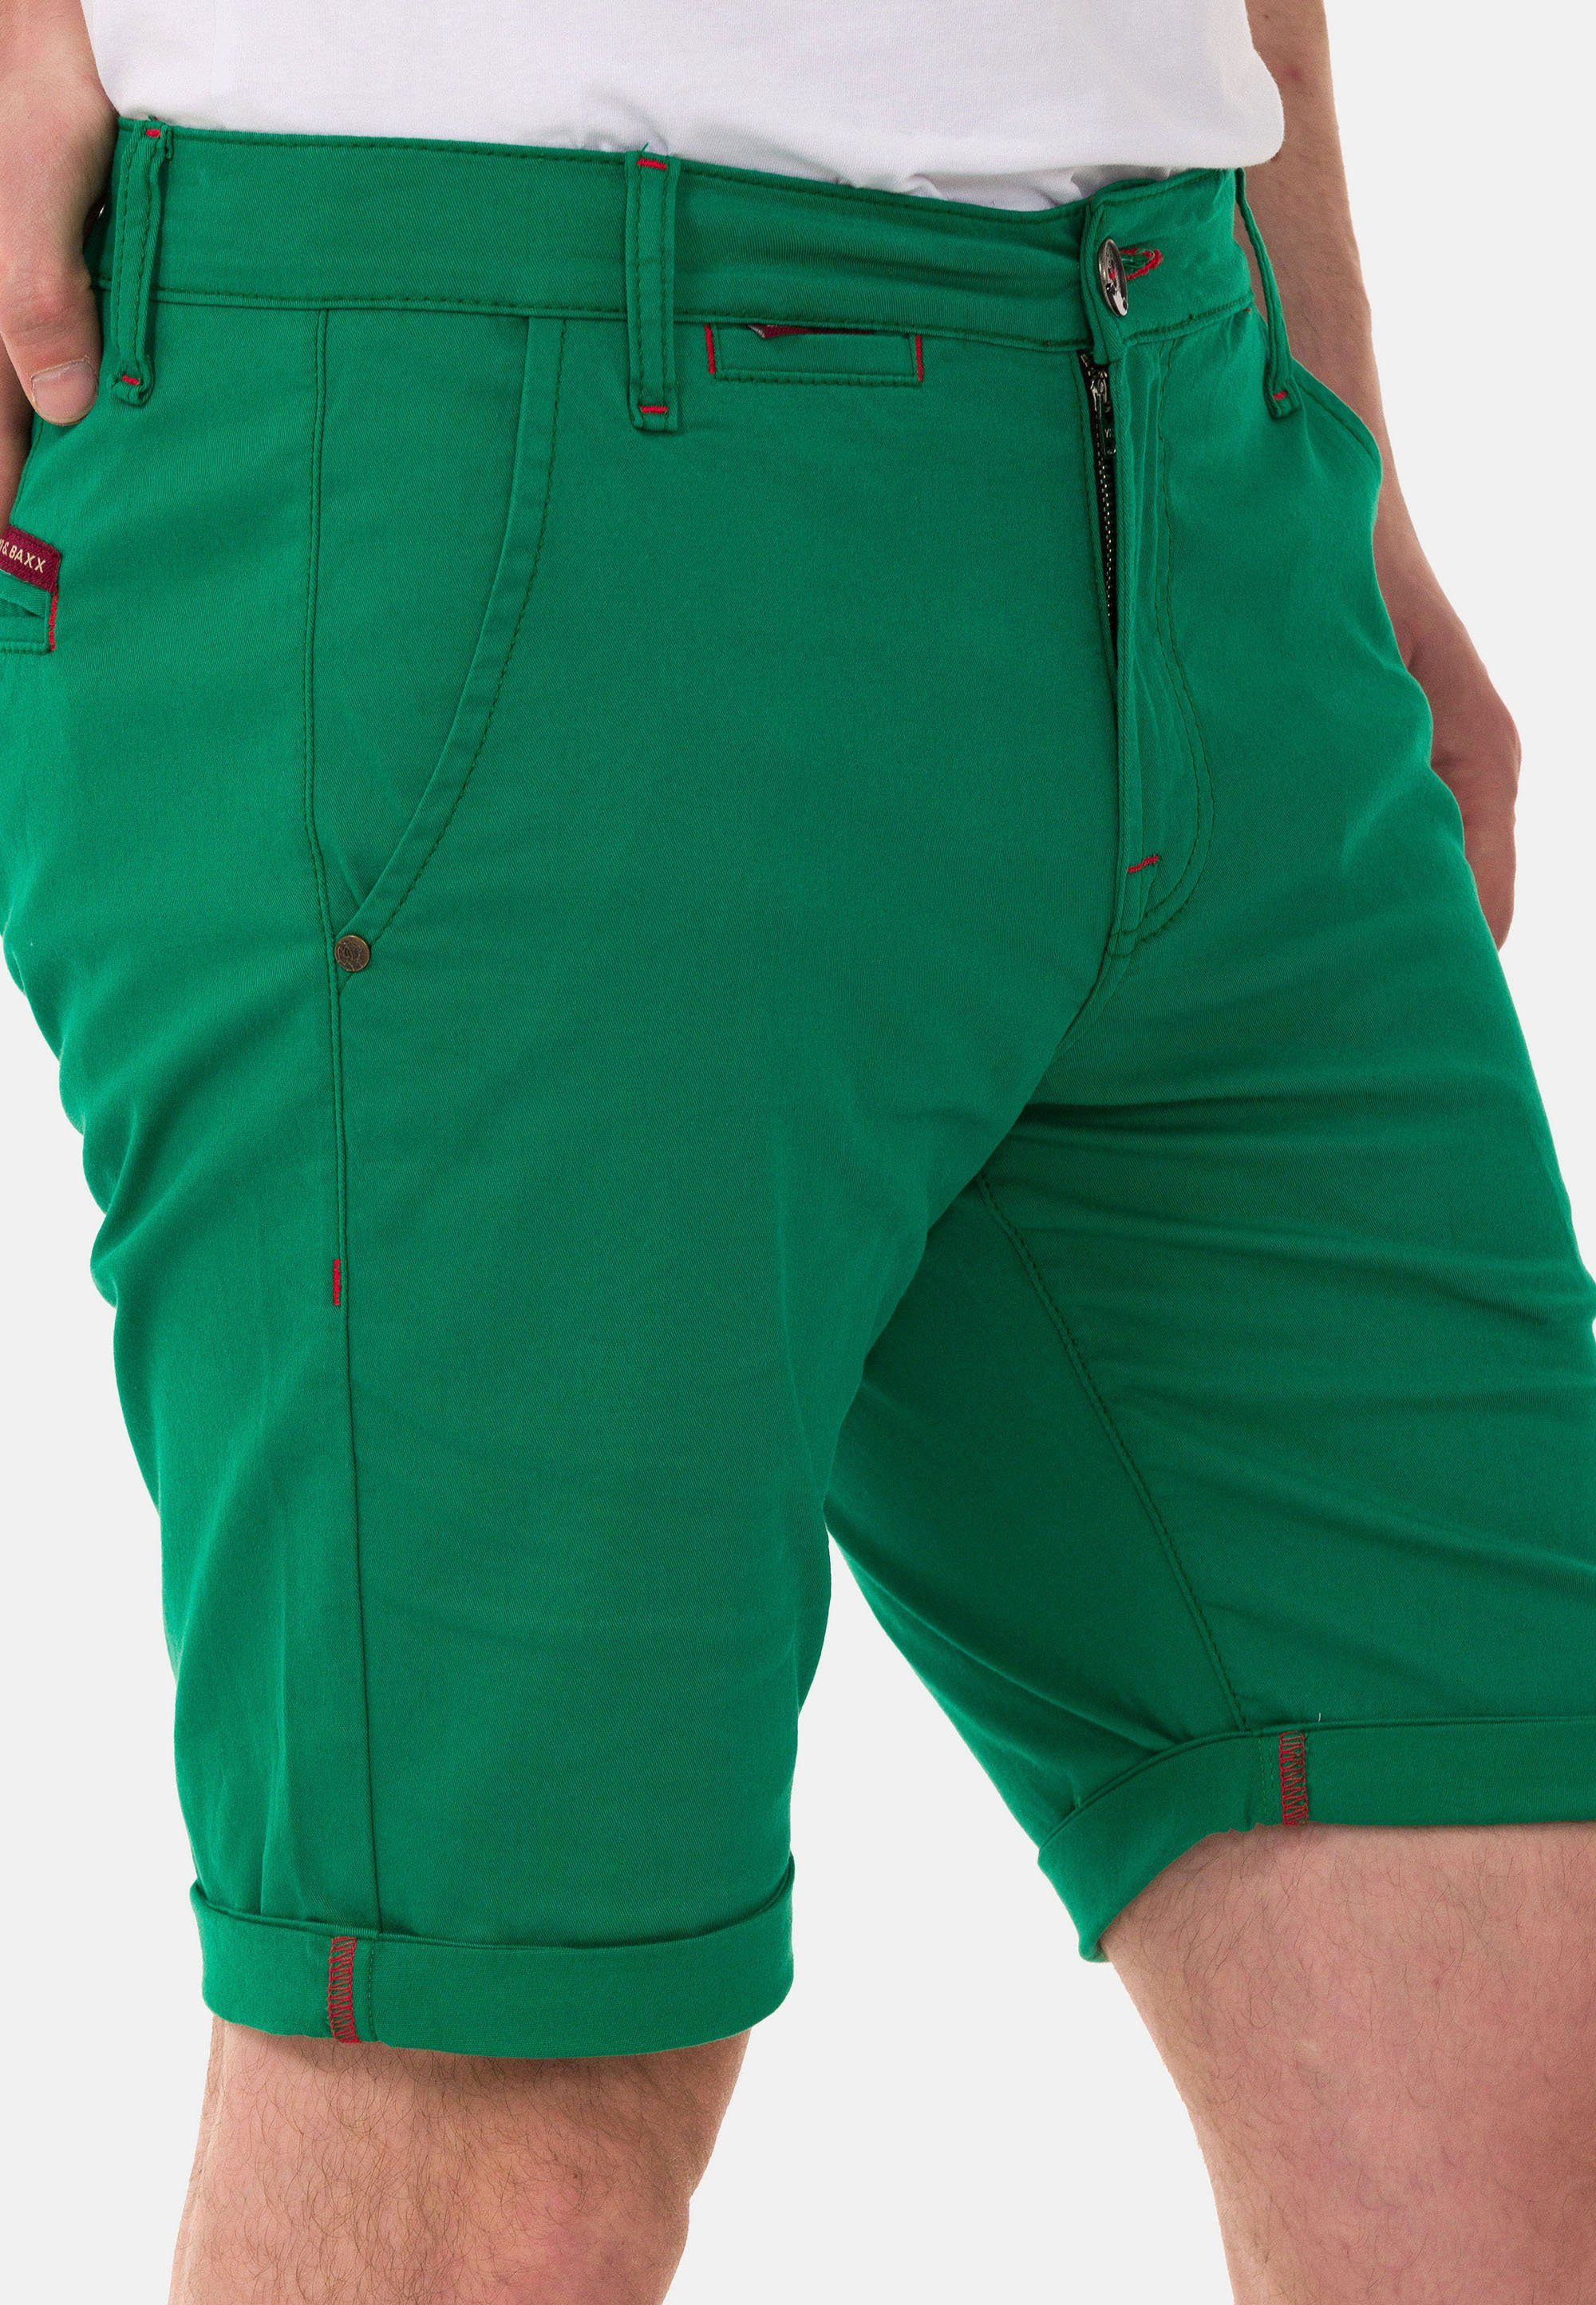 Cipo & einfarbigen Look Baxx im Shorts grün